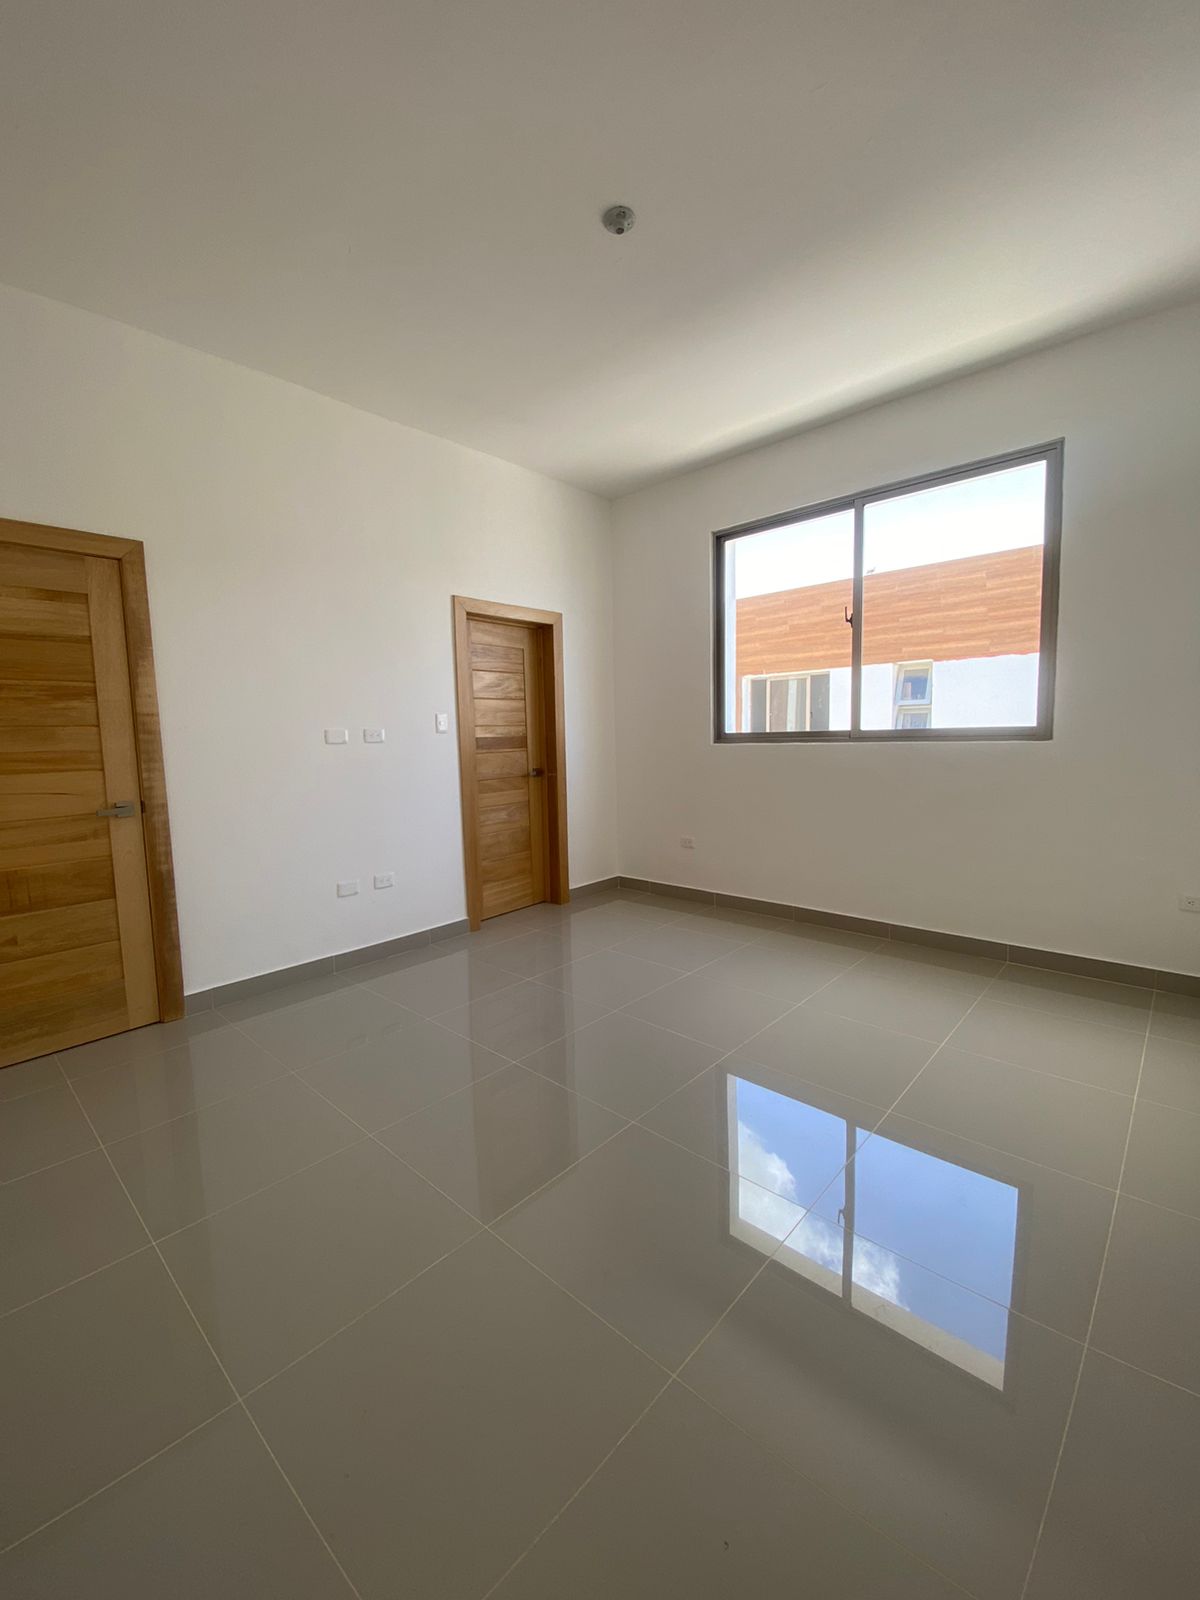 Vendo casas totalmente nueva en Prador Oriental Autopista de San Isidr Foto 7217559-5.jpg